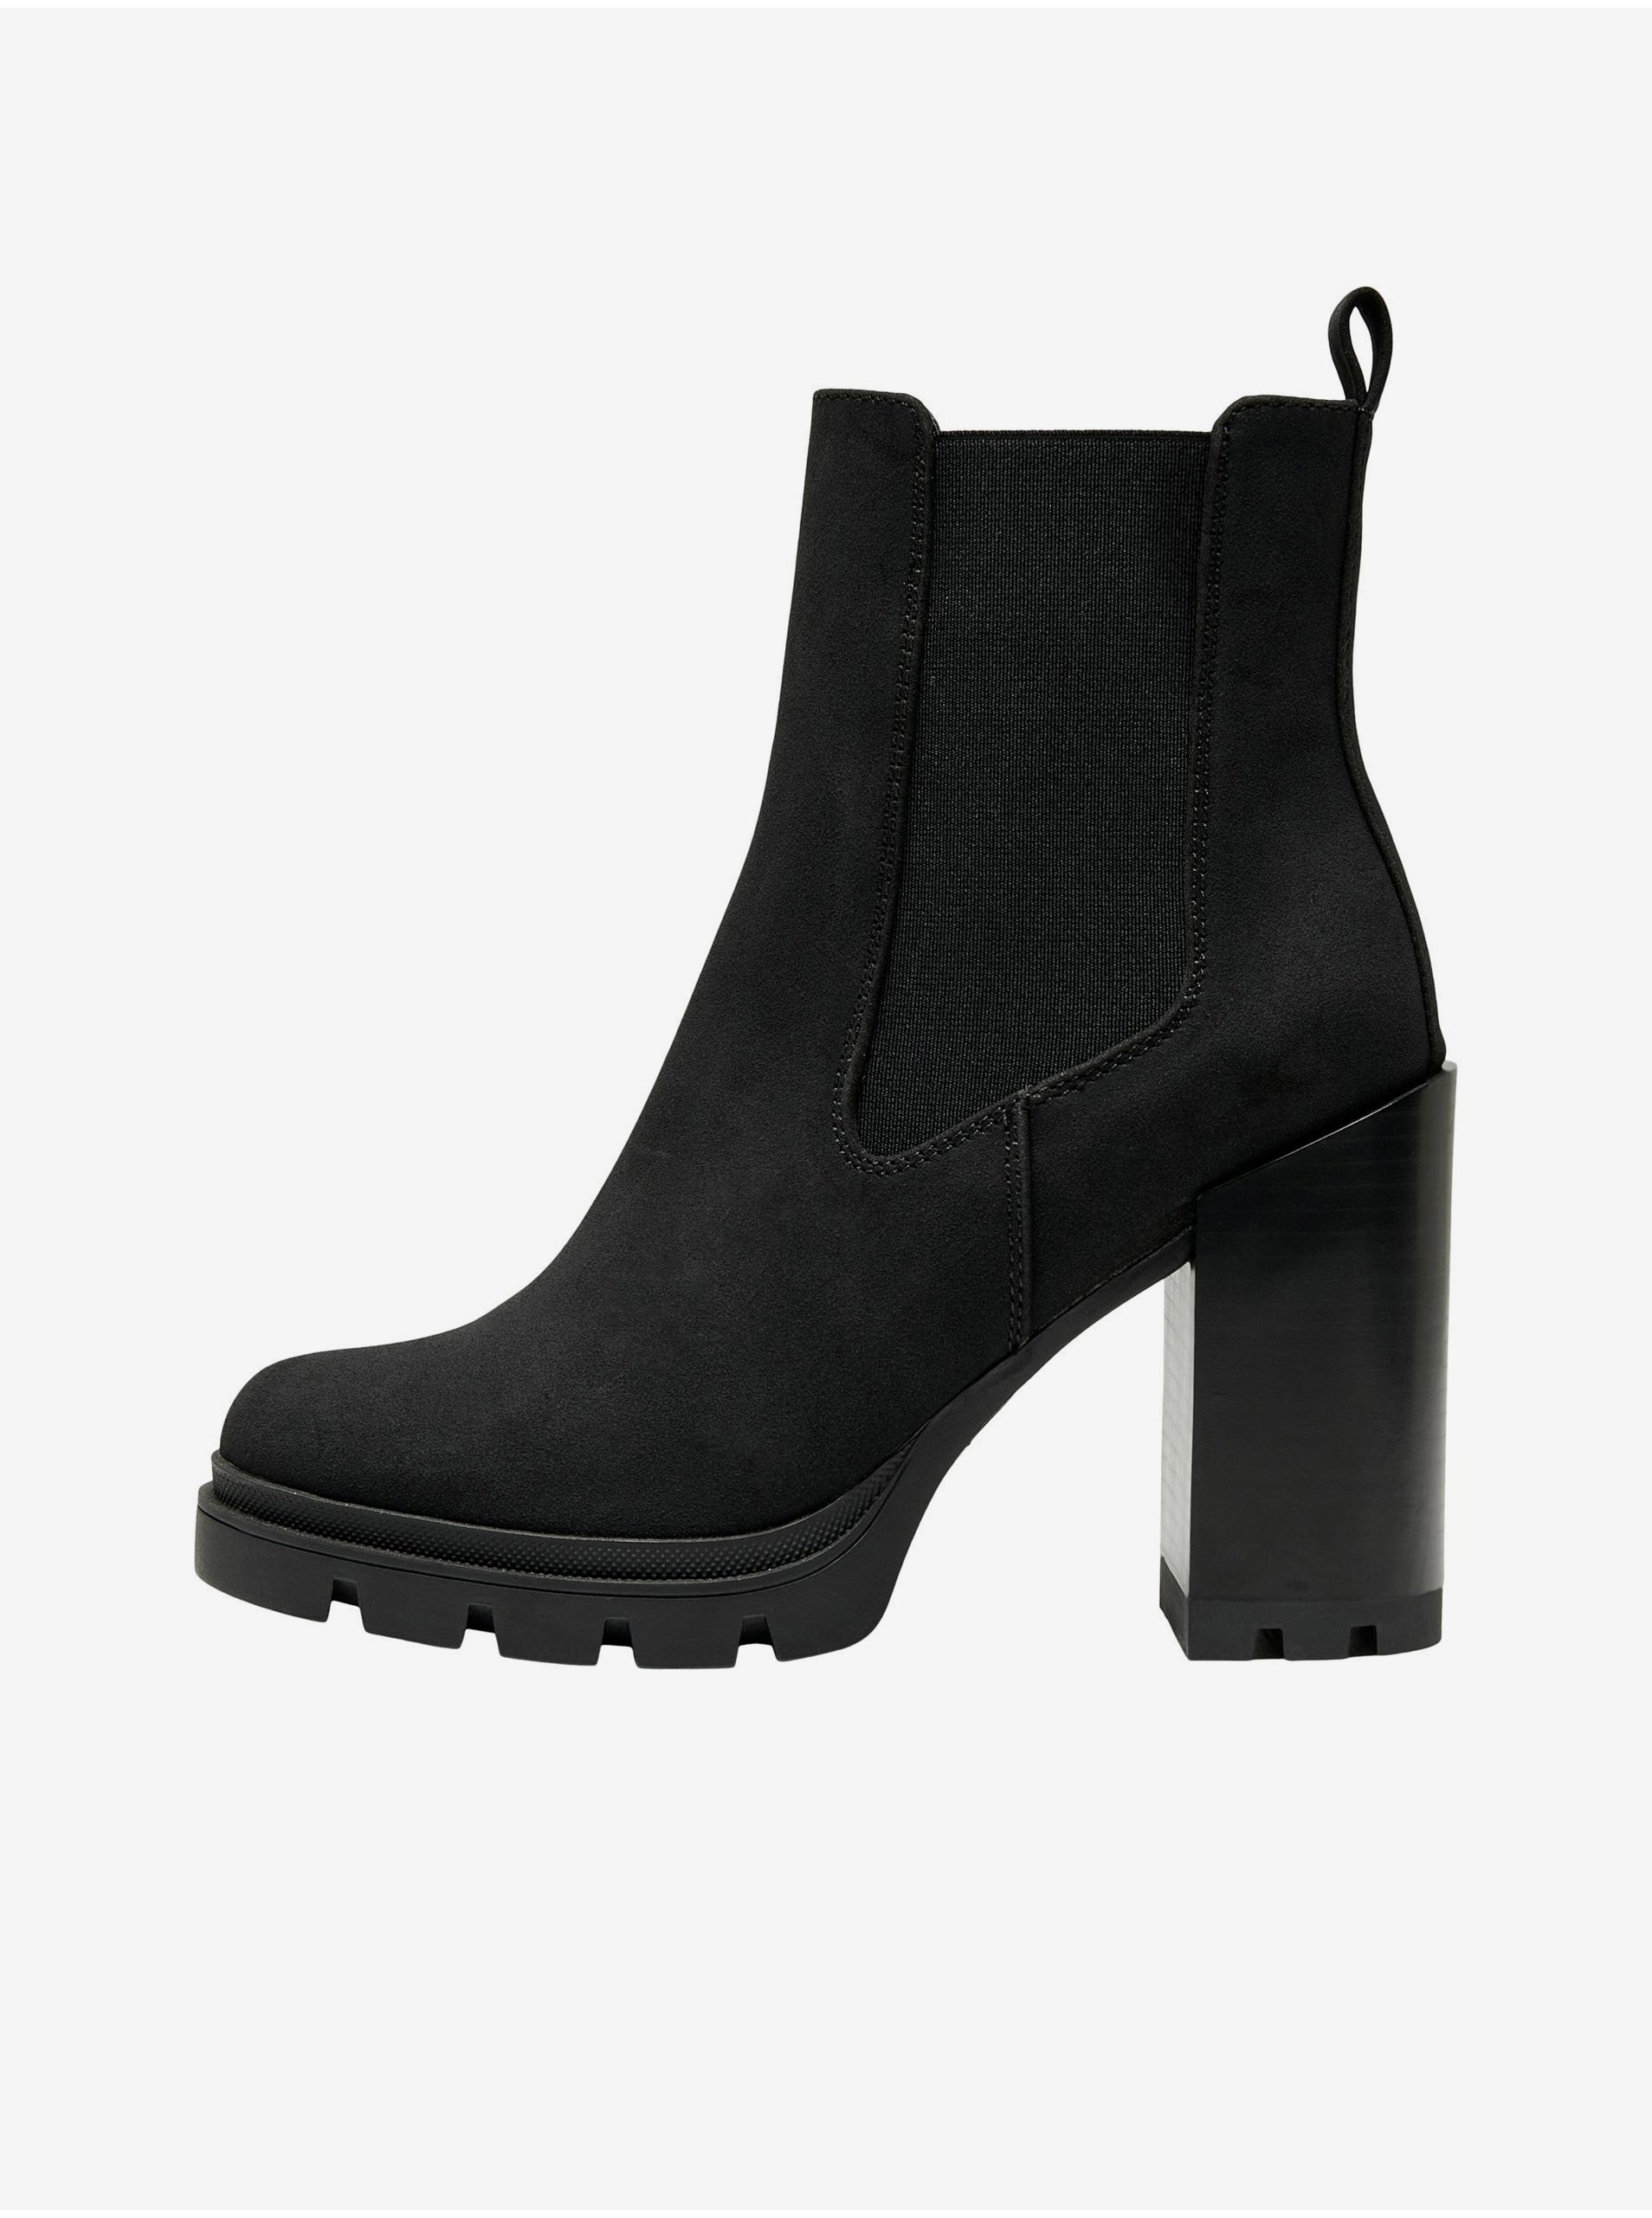 E-shop Čierne dámske členkové topánky v semišovej úprave ONLY Brave